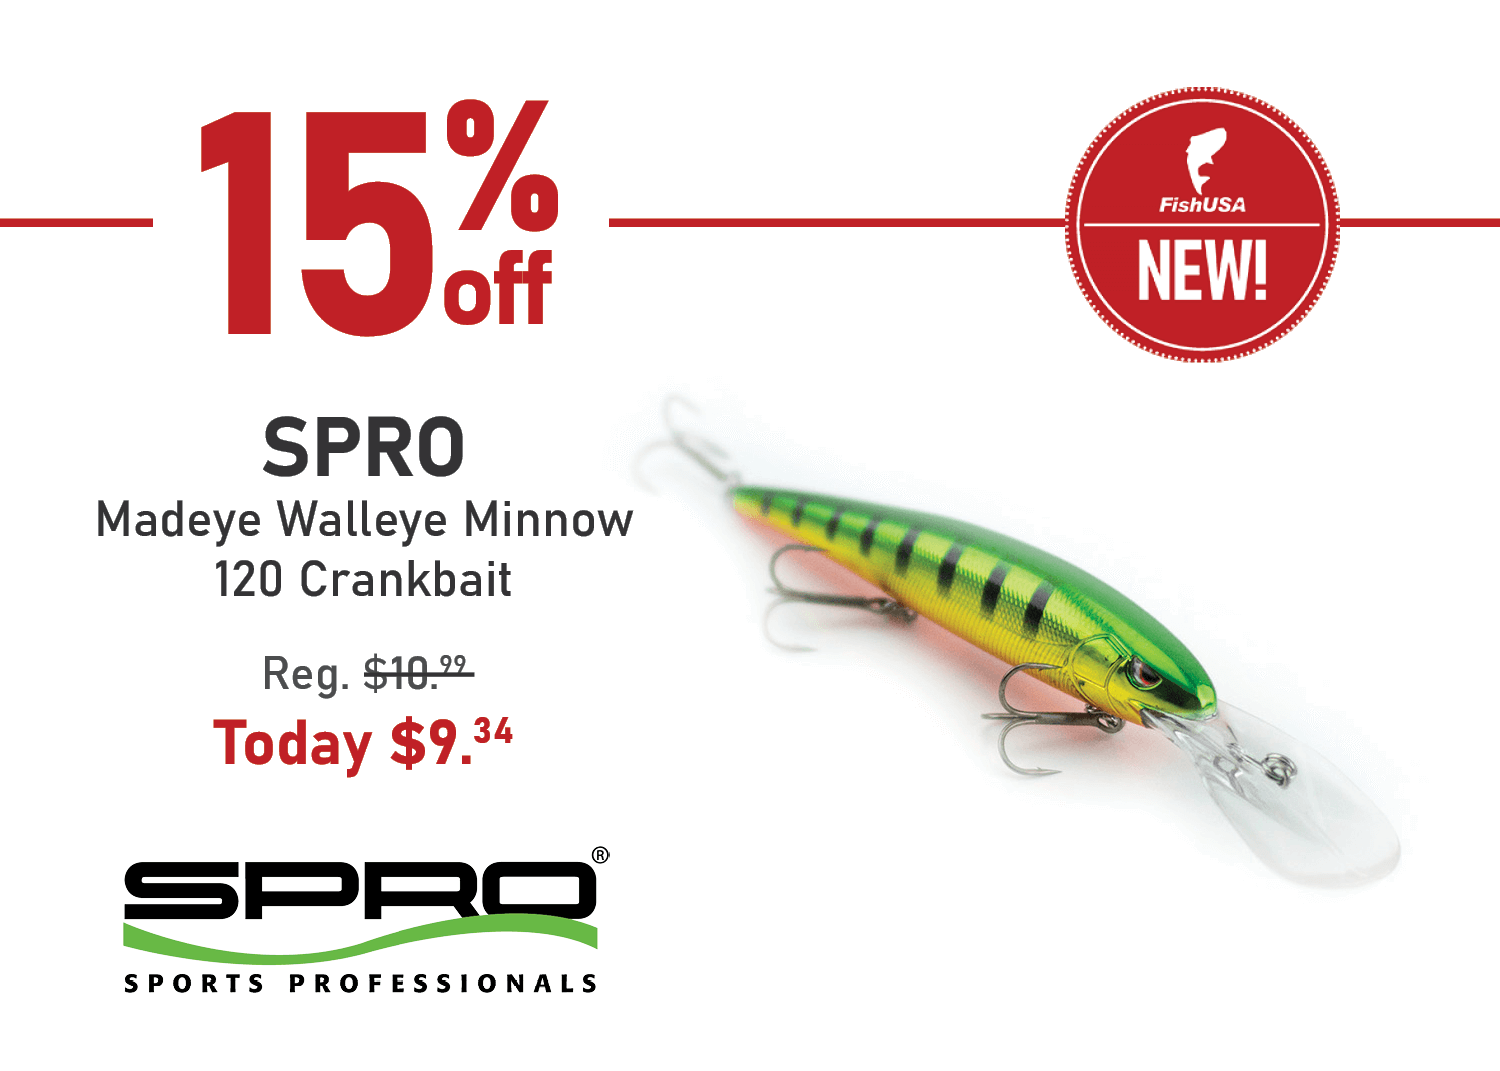 Save 15% on the SPRO Madeye Walleye Minnow 120 Crankbait!